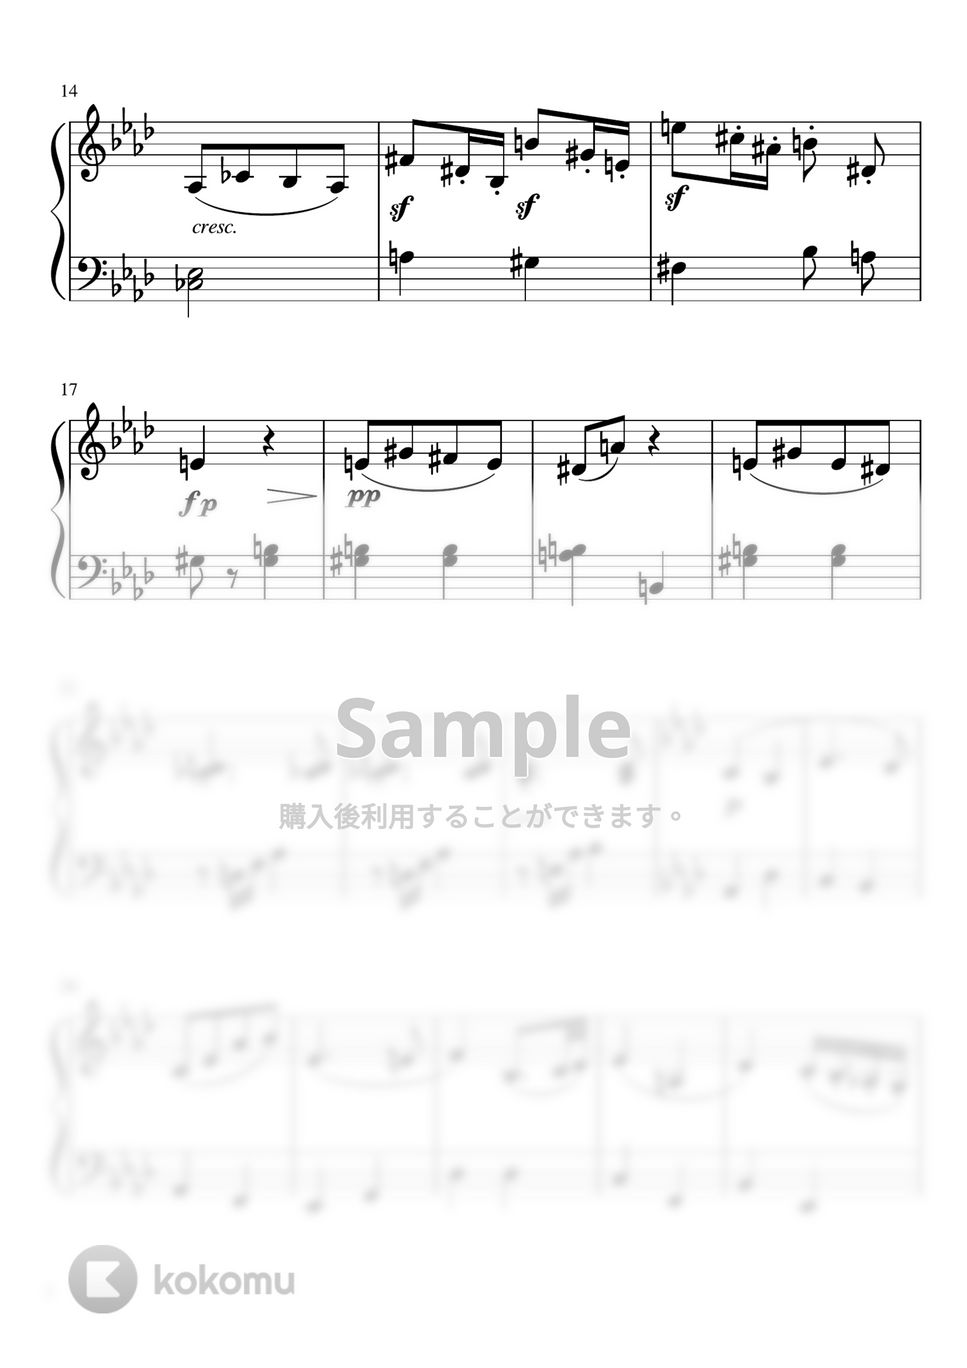 ベートーヴェン - ピアノソナタ第8番第2楽章「悲愴」 (A♭・ピアノソロ初級) by pfkaori